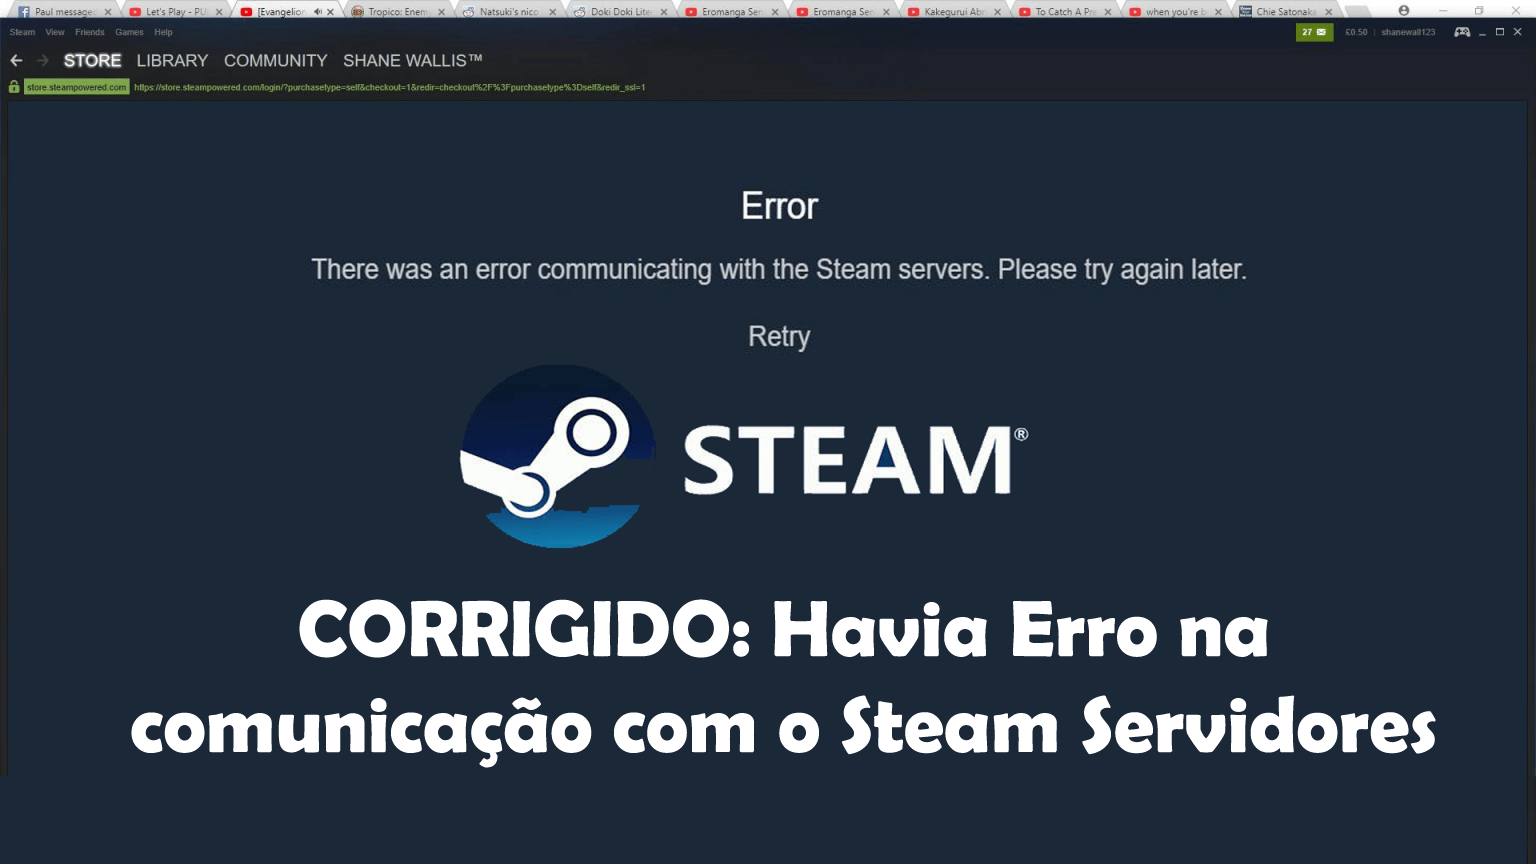 erro de comunicação com servidores steam